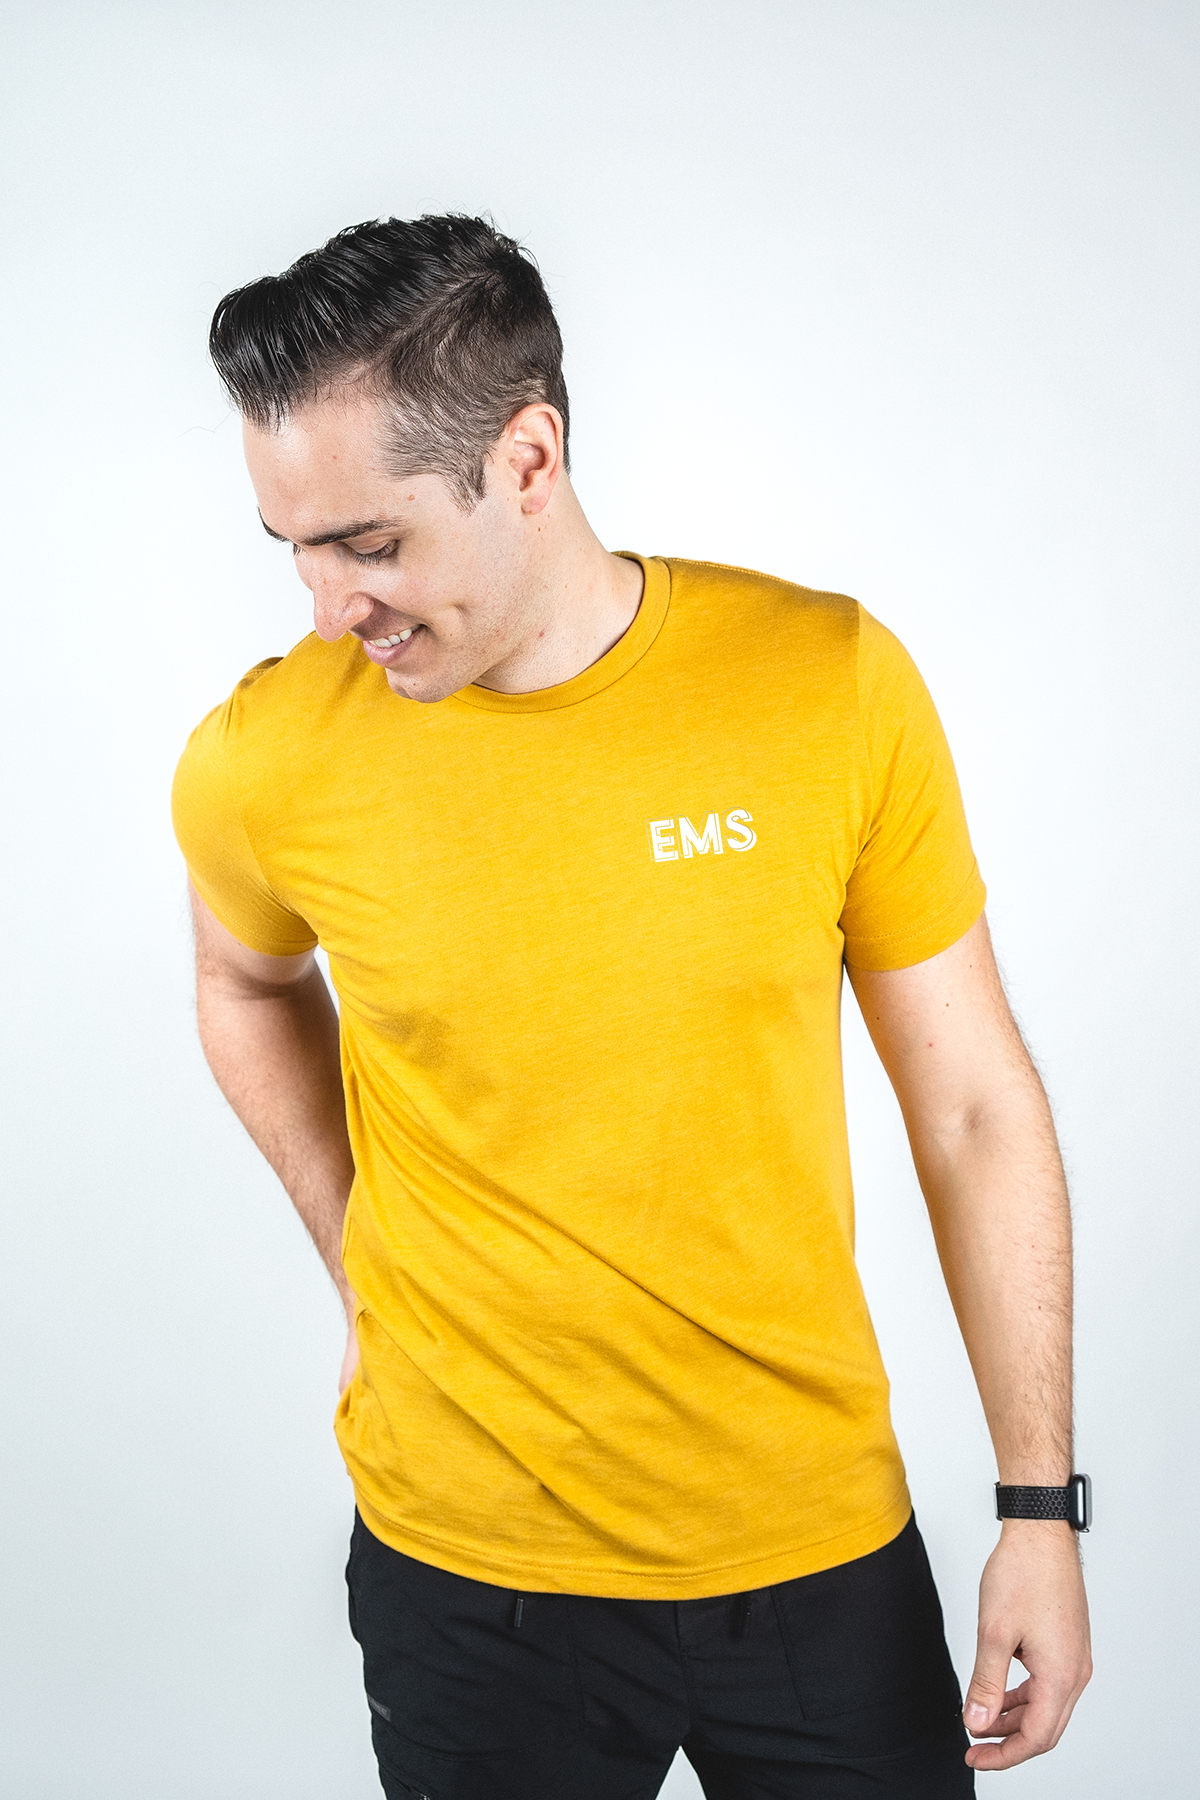 EMS Creds - Shirt